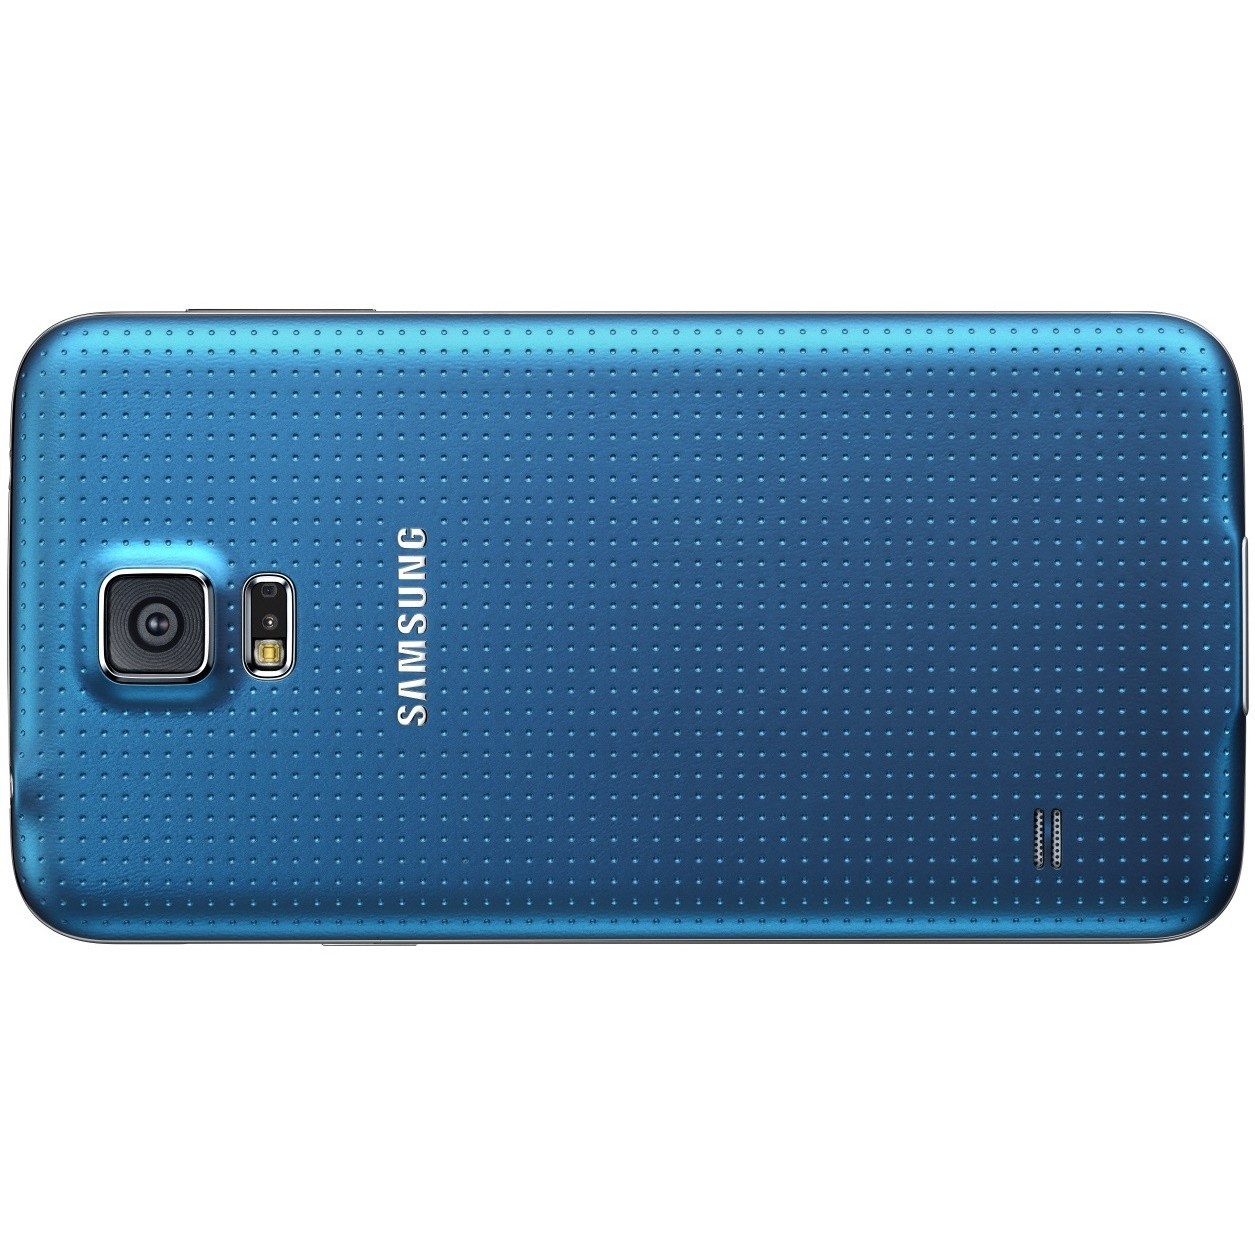 Samsung Galaxy s5 SM-g900f 16gb. Samsung Galaxy s5 Duos SM-g900fd. Samsung SM g900f фото. G900 1s. Samsung galaxy a 54 g